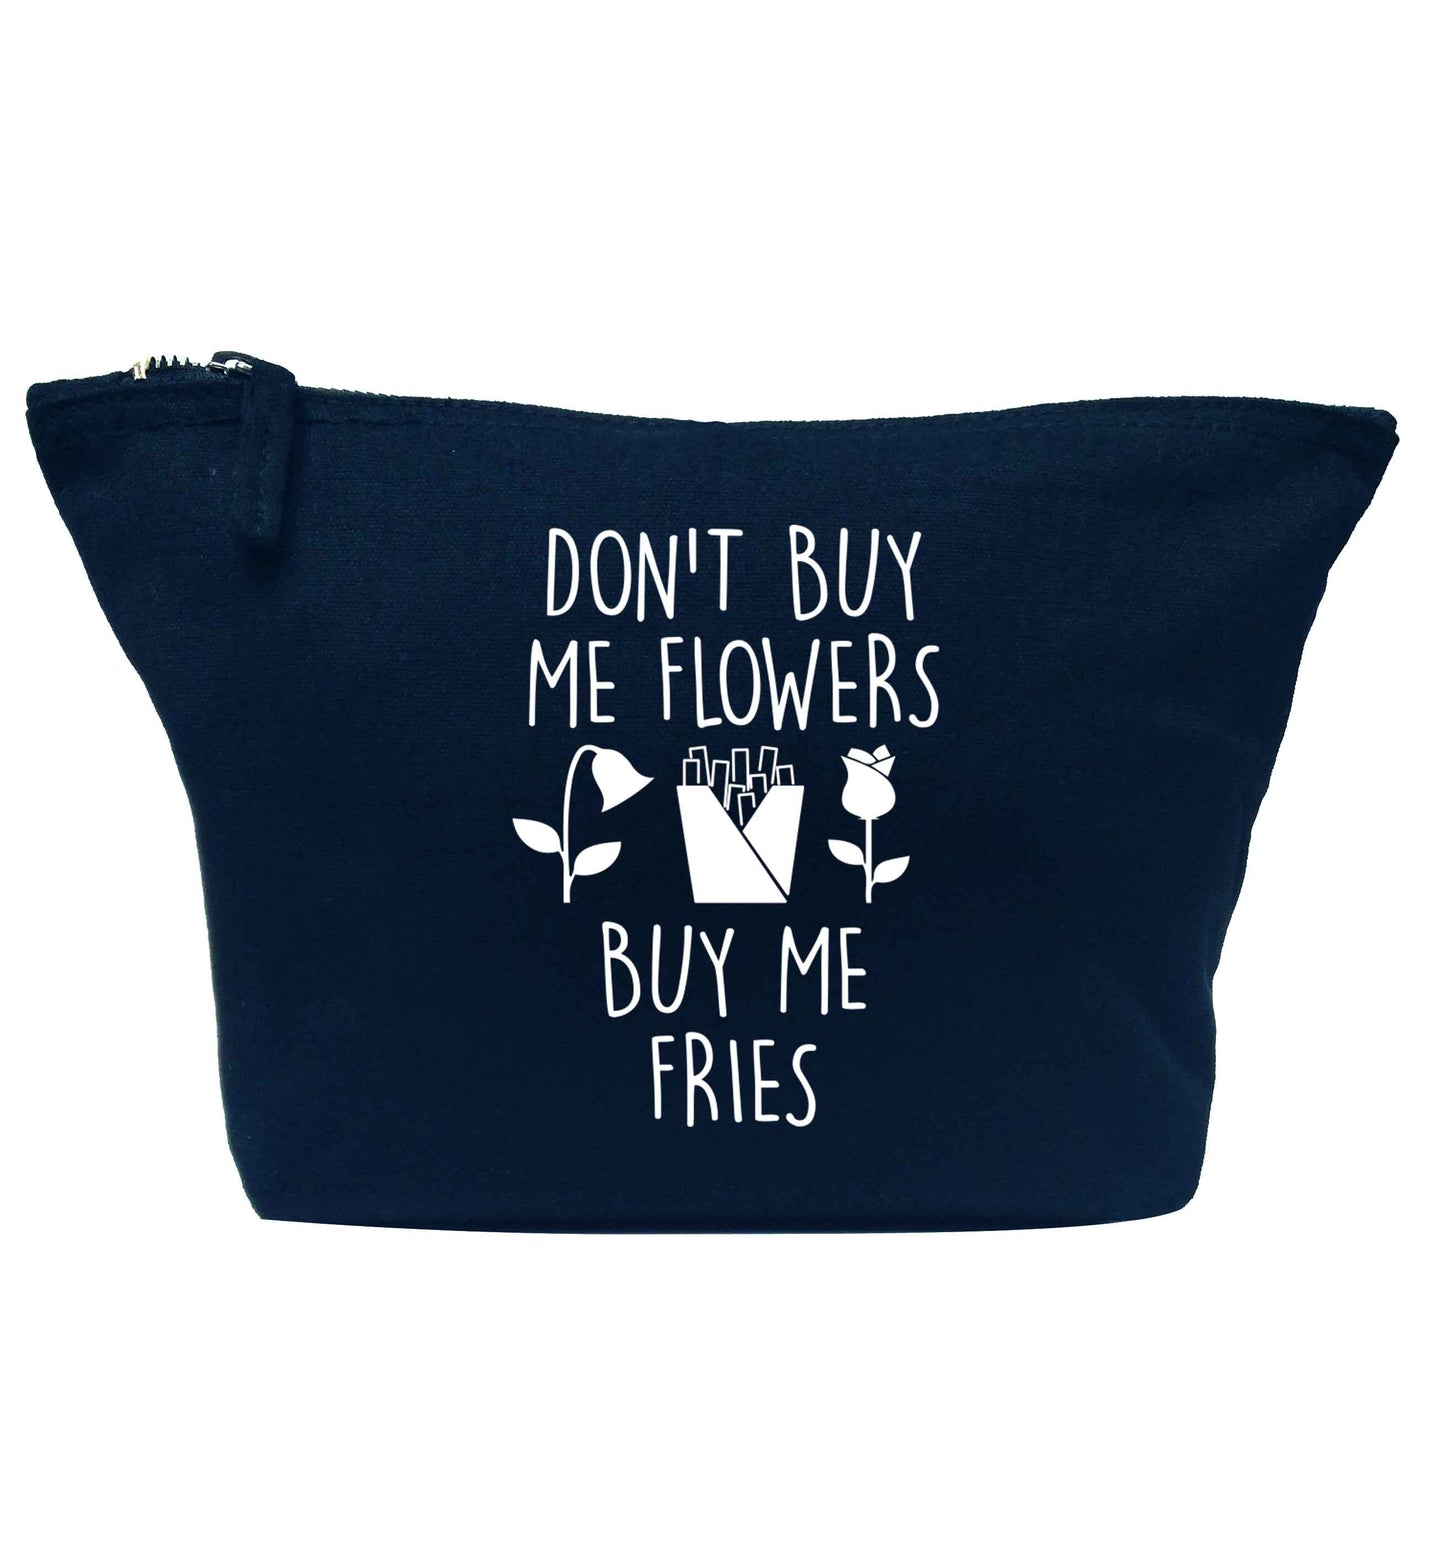 Don't buy me flowers buy me fries navy makeup bag